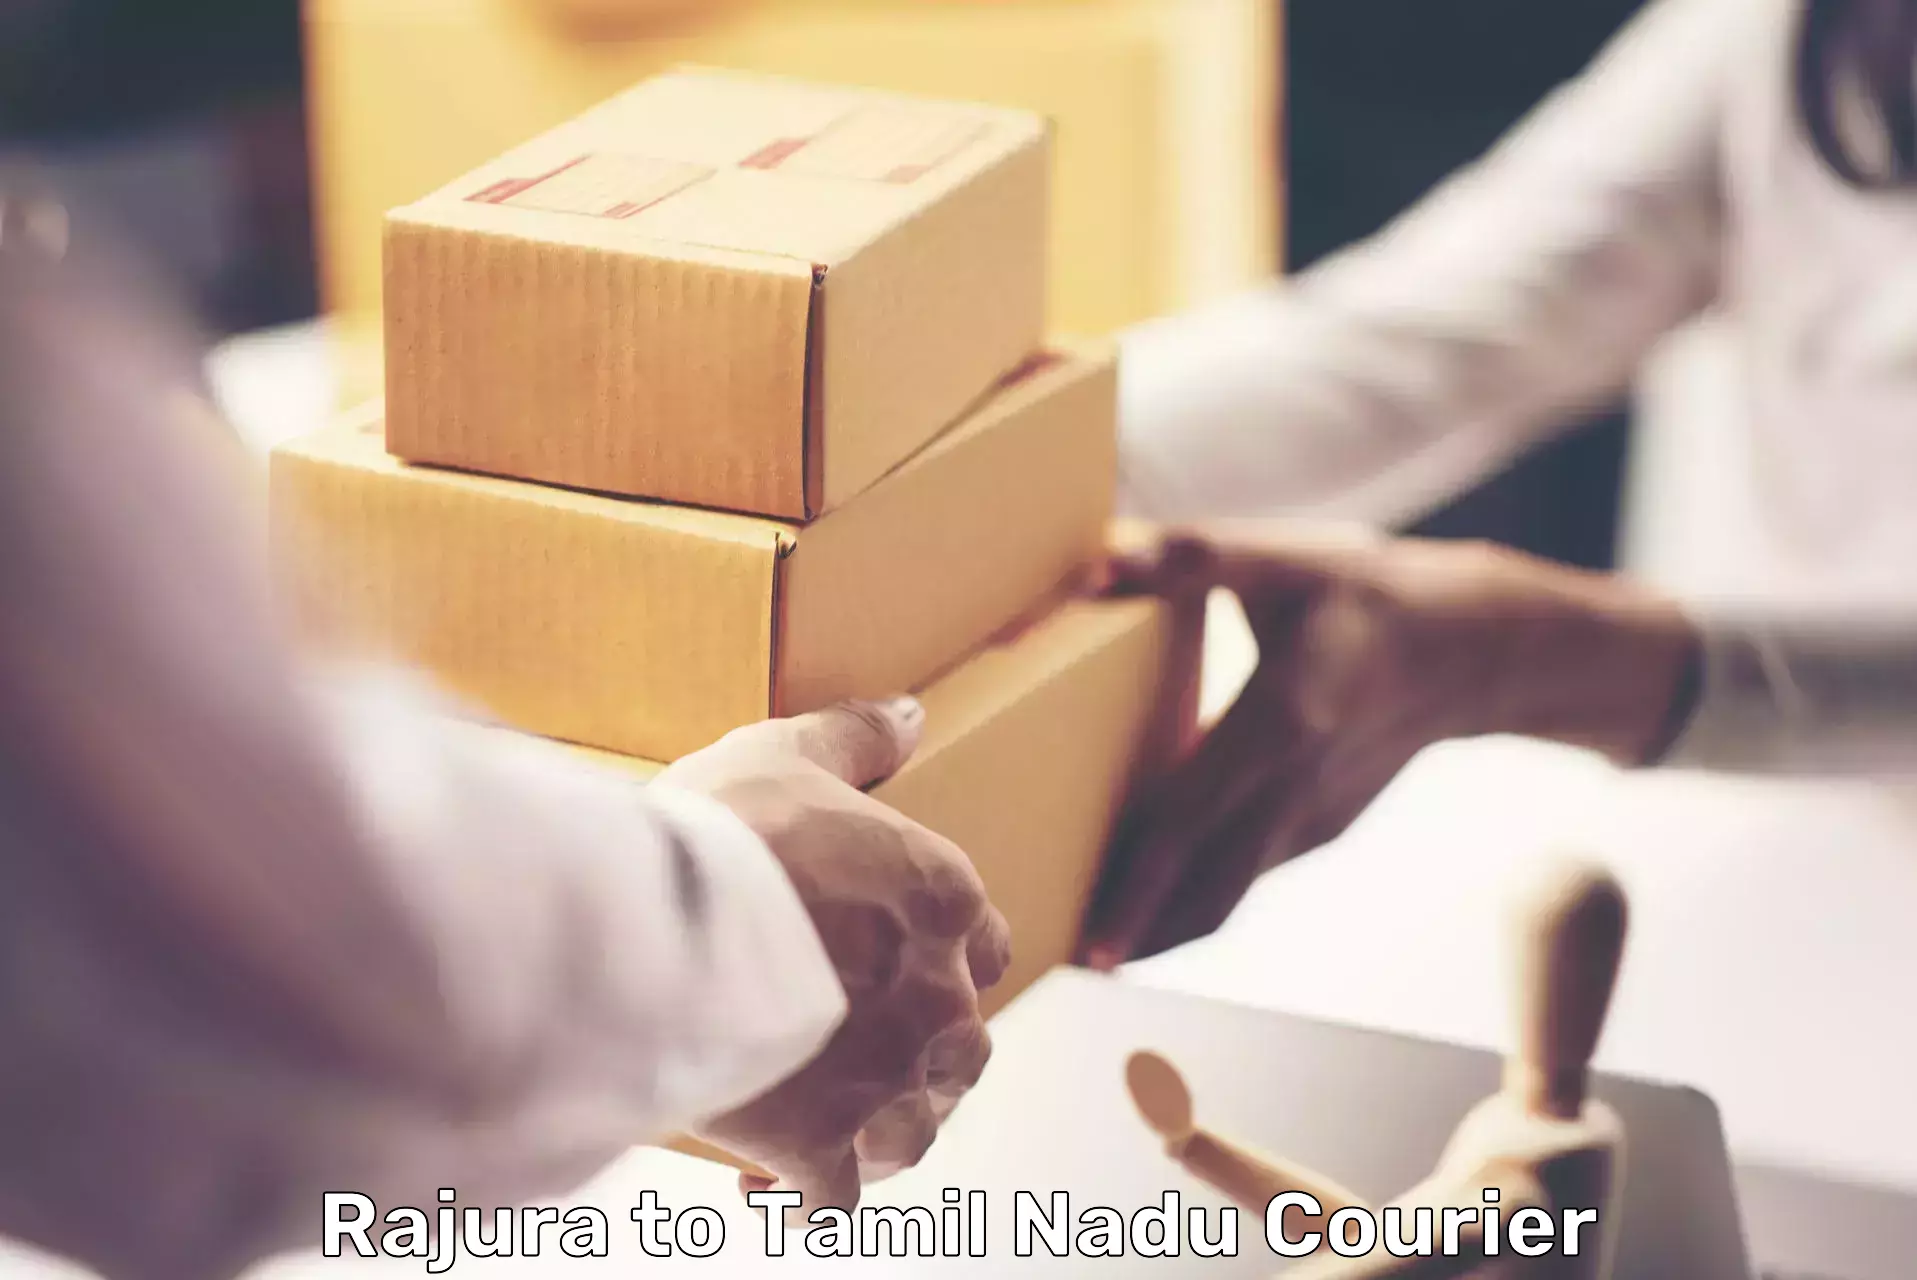 Quick courier services Rajura to Nagapattinam